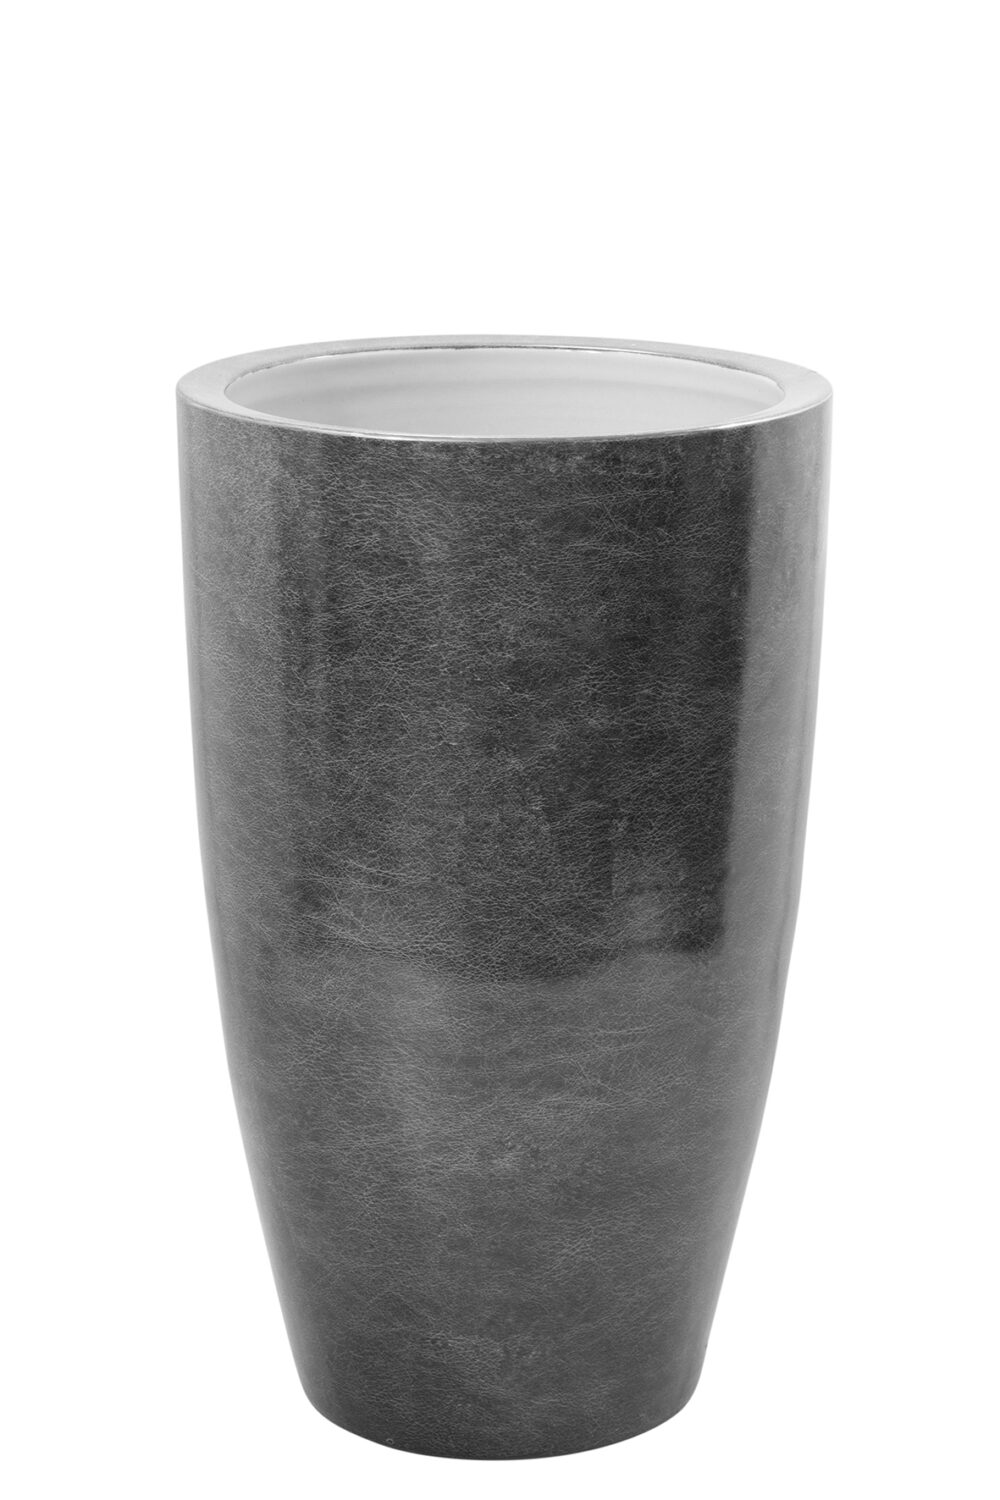 120006 Vase Blumenvase grau, silberfarben Deko Tischvase MELUA